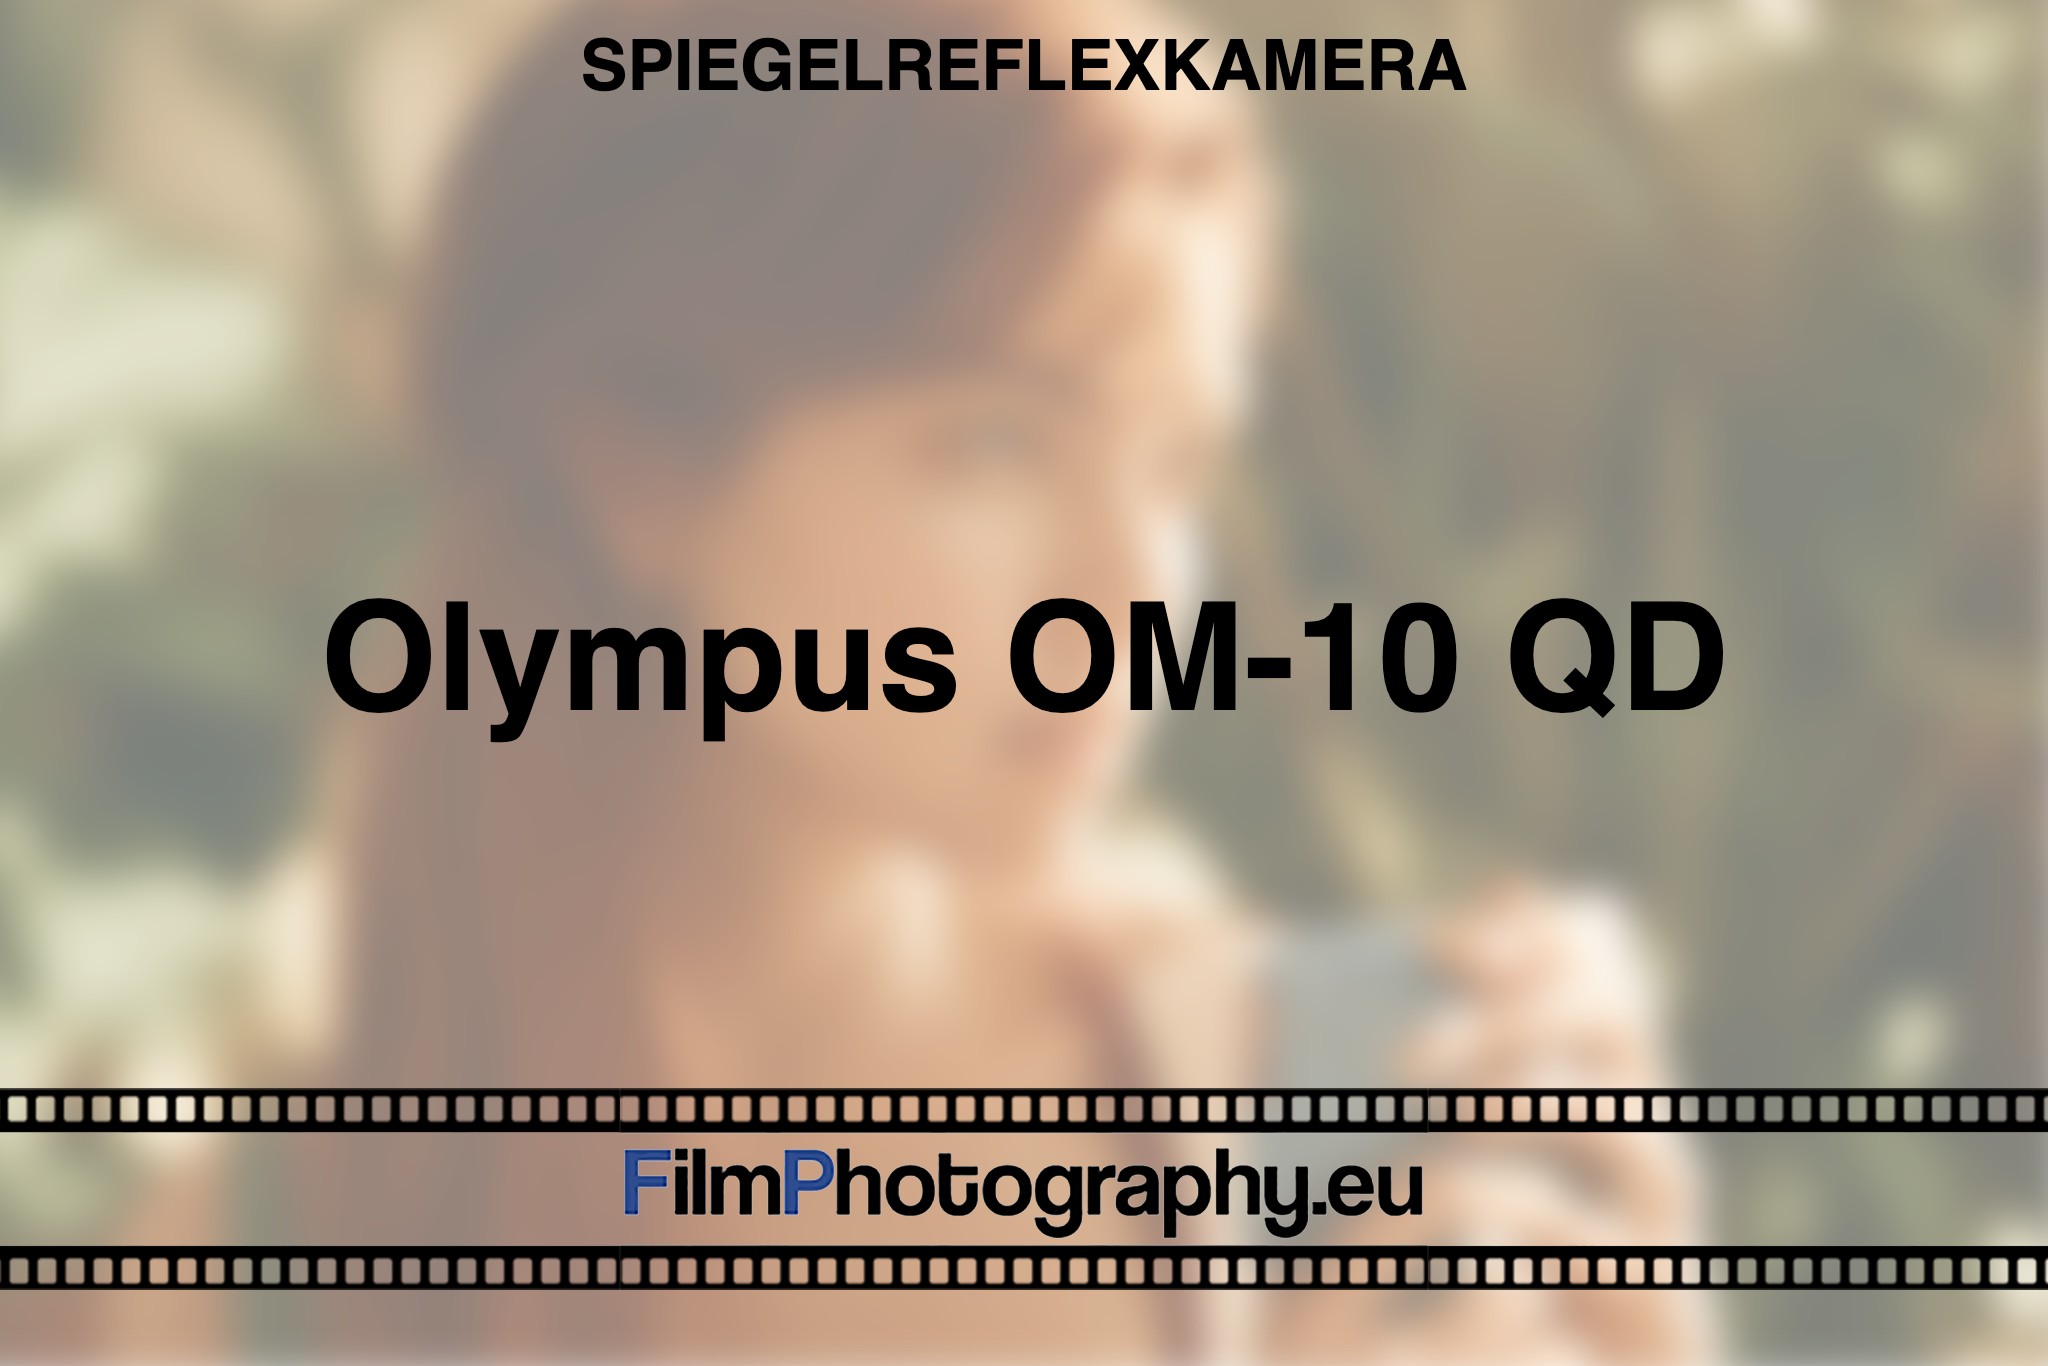 olympus-om-10-qd-spiegelreflexkamera-bnv